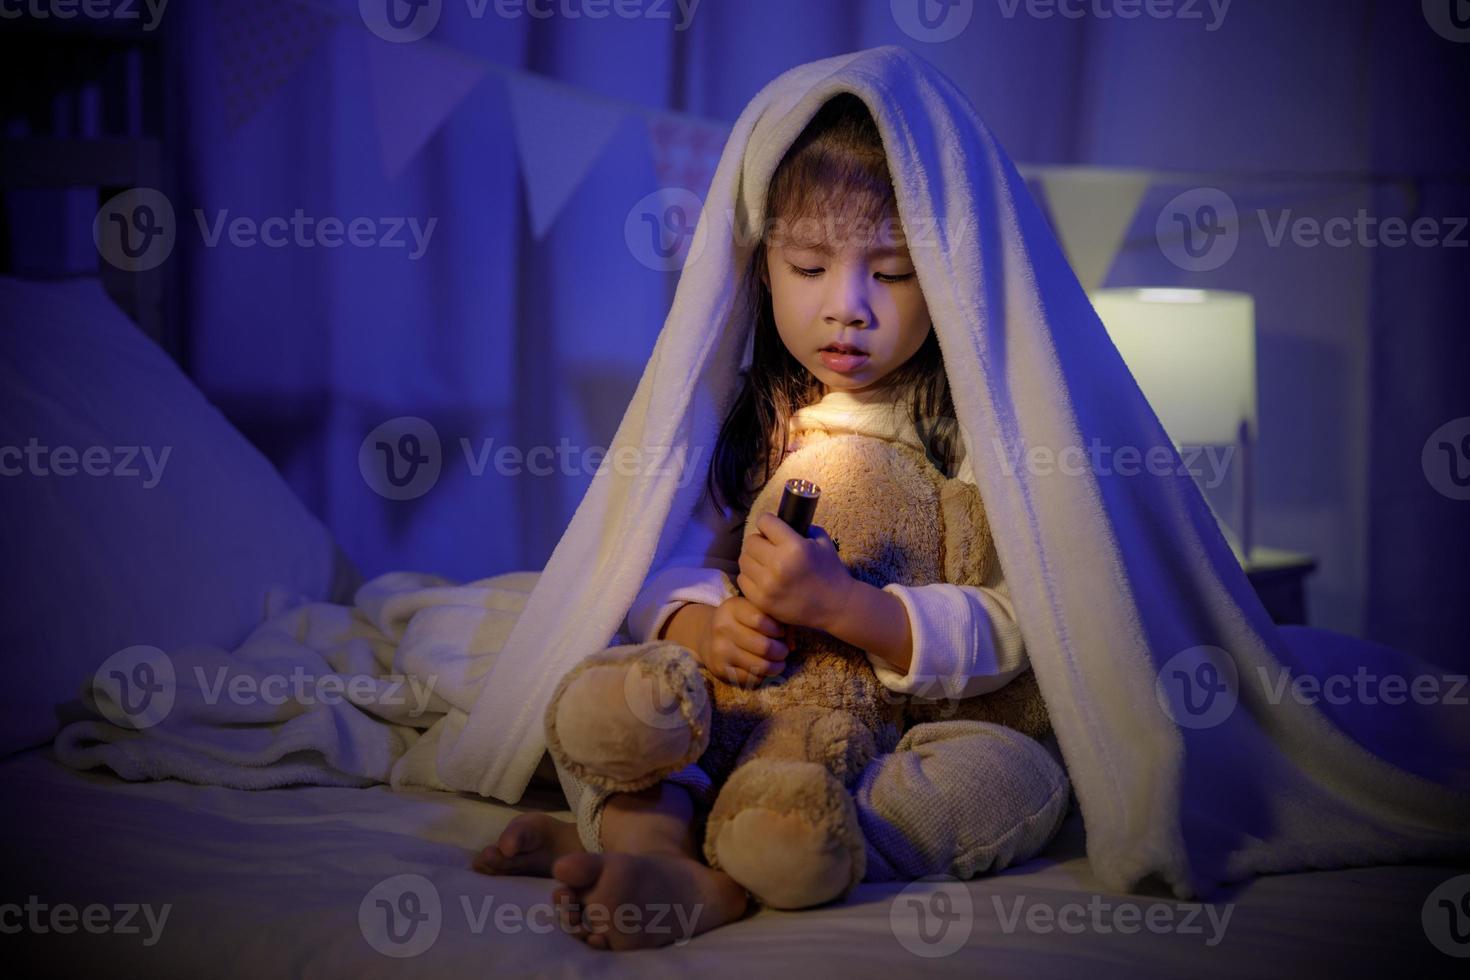 enfant asiatique fille jouant ours en peluche avec lampe de poche sous la couverture sur le lit dans une chambre sombre la nuit avant de dormir, enfants confortables à la maison concept photo